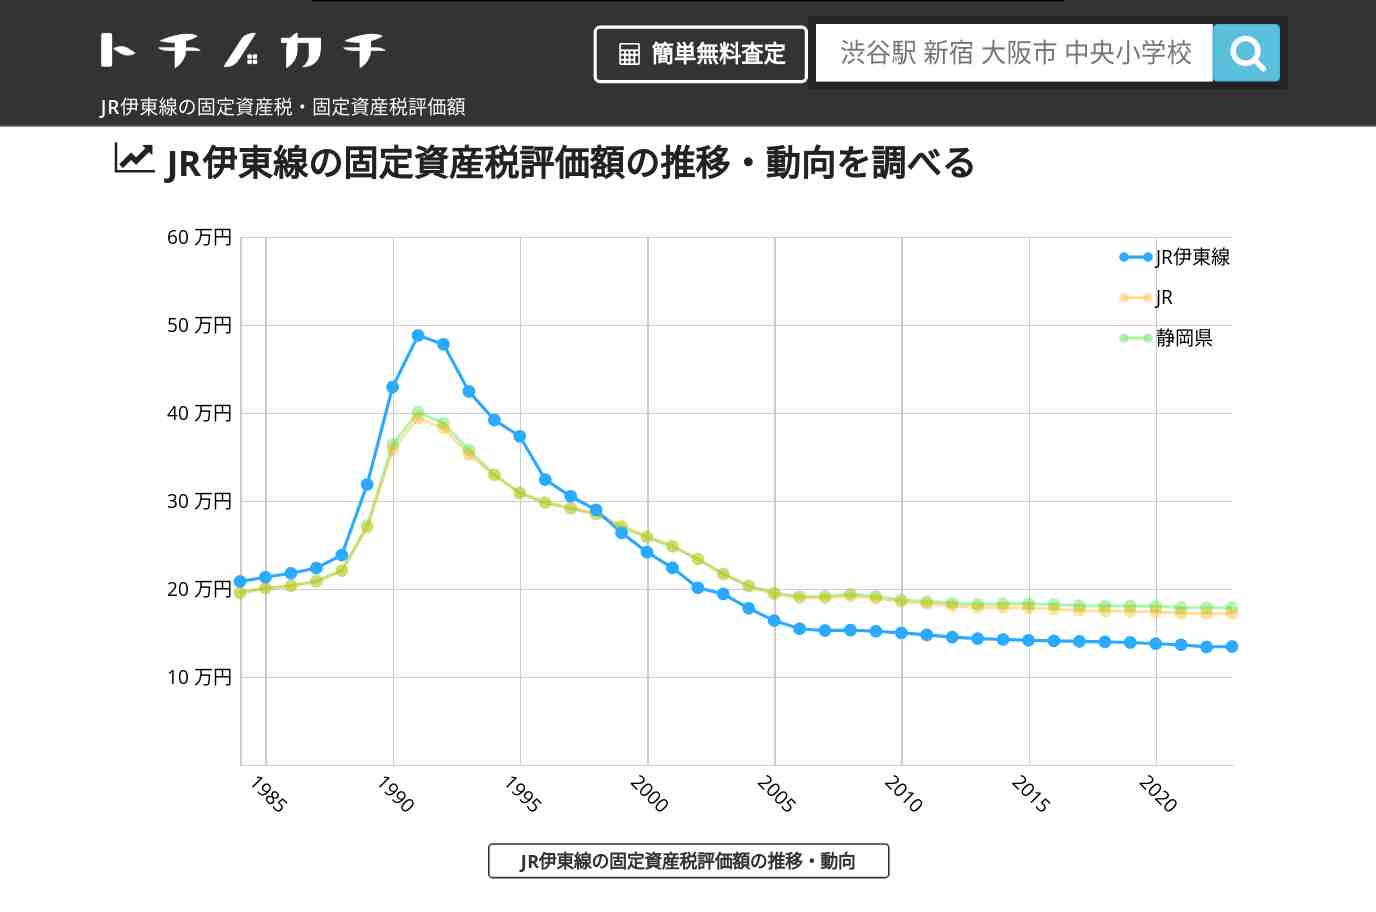 JR伊東線(JR)の固定資産税・固定資産税評価額 | トチノカチ